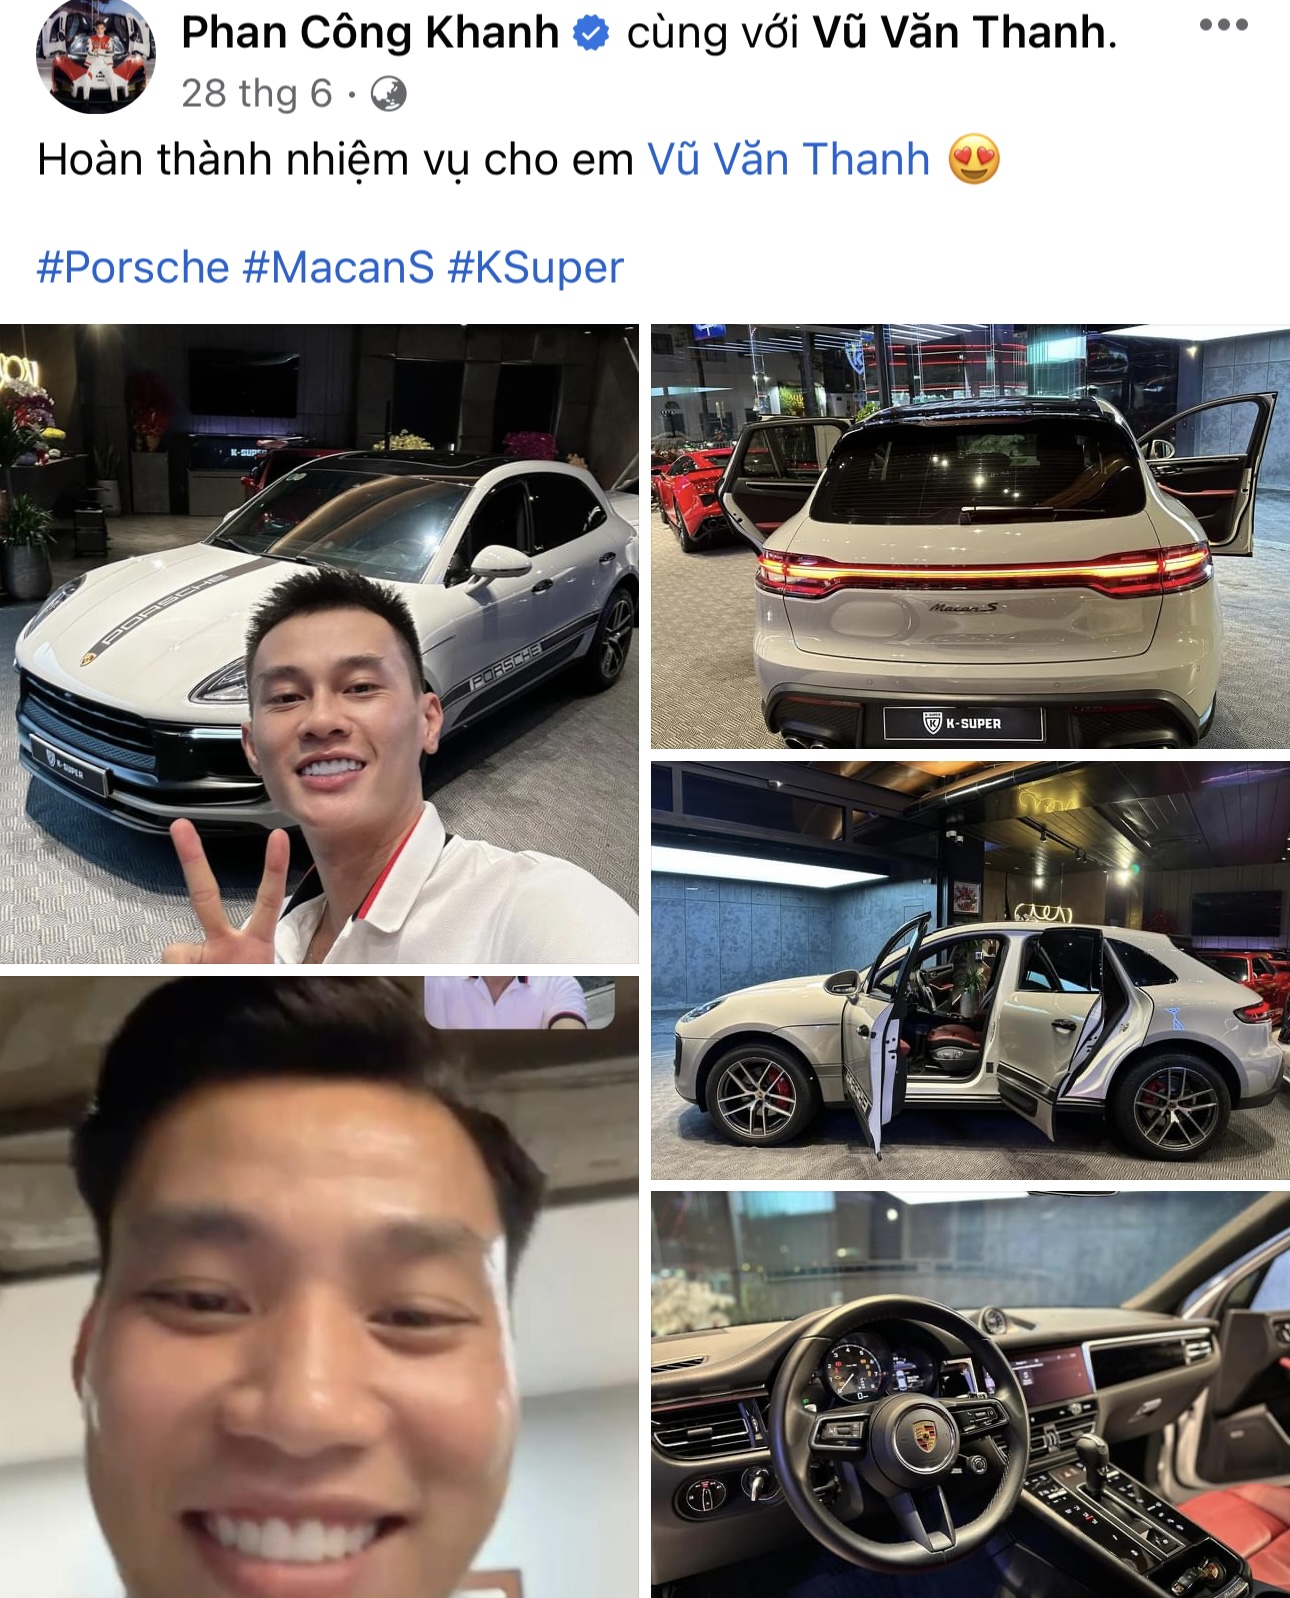 Xe Porsche của cầu thủ Vũ Văn Thanh gặp tai nạn tại Hưng Yên - Ảnh 3.